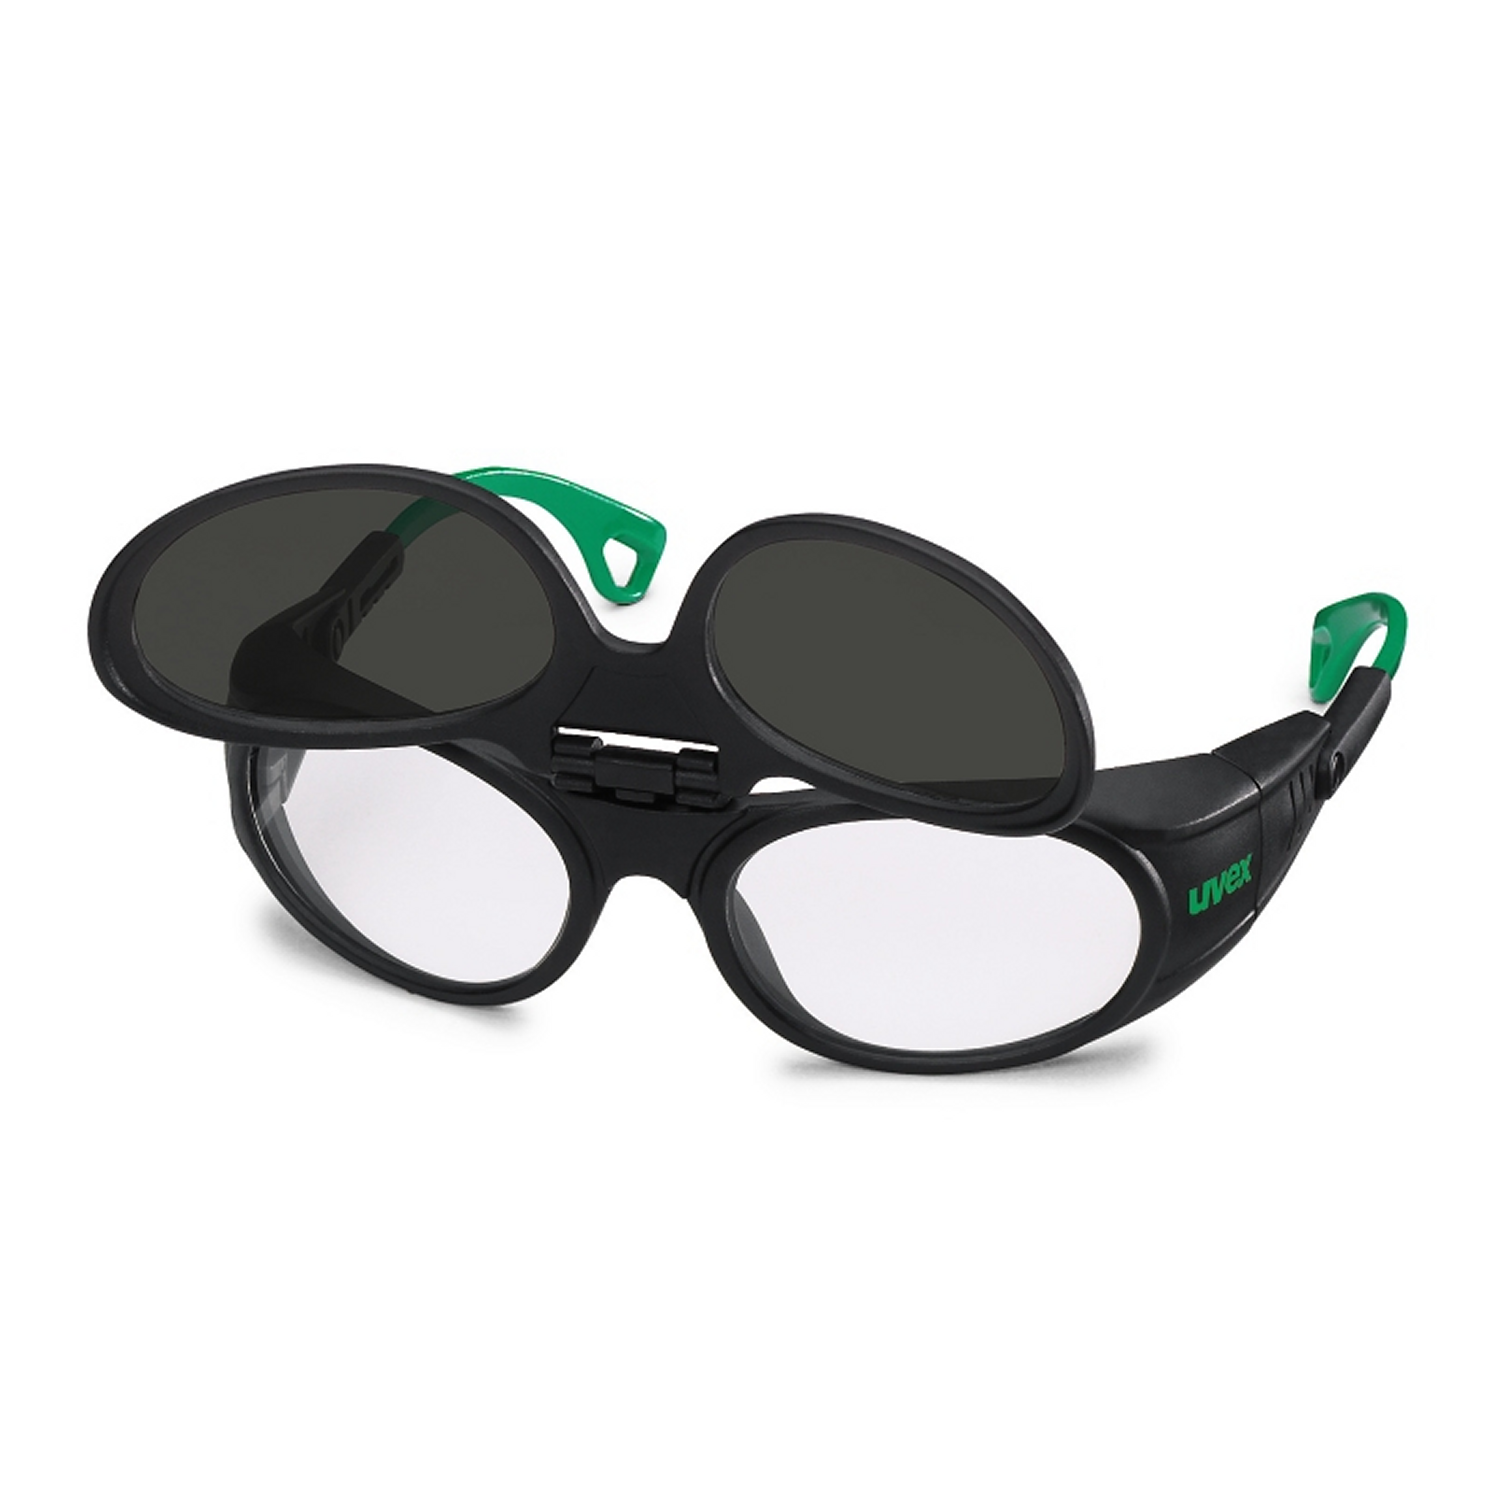 Atis Online Shop Uvex Schweißerschutzbrille Hochklappbar Bekleidung